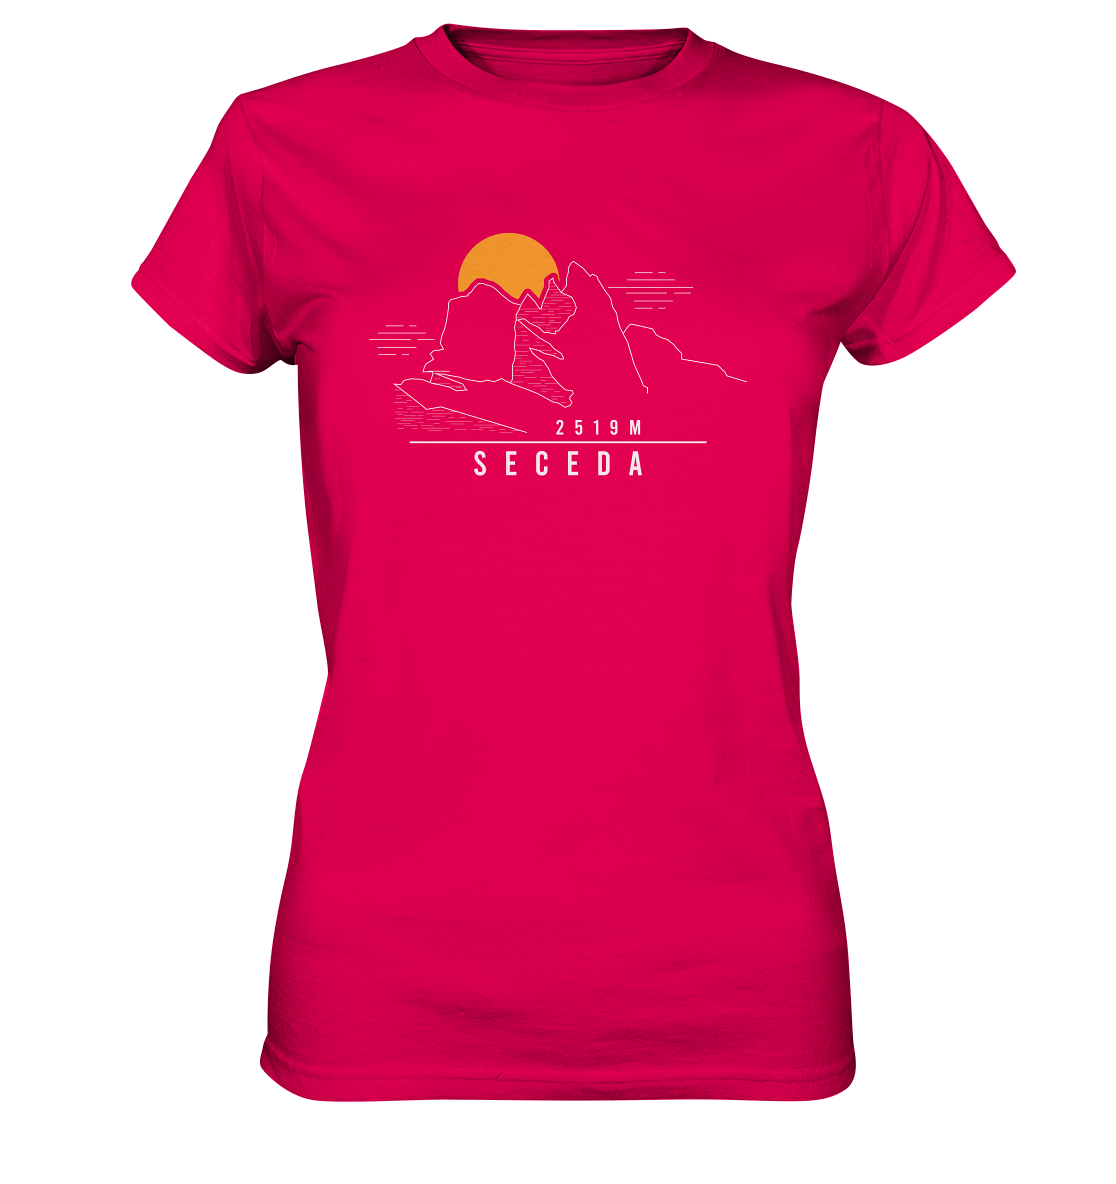 Seceda 2519 m - Women Premium T-Shirt